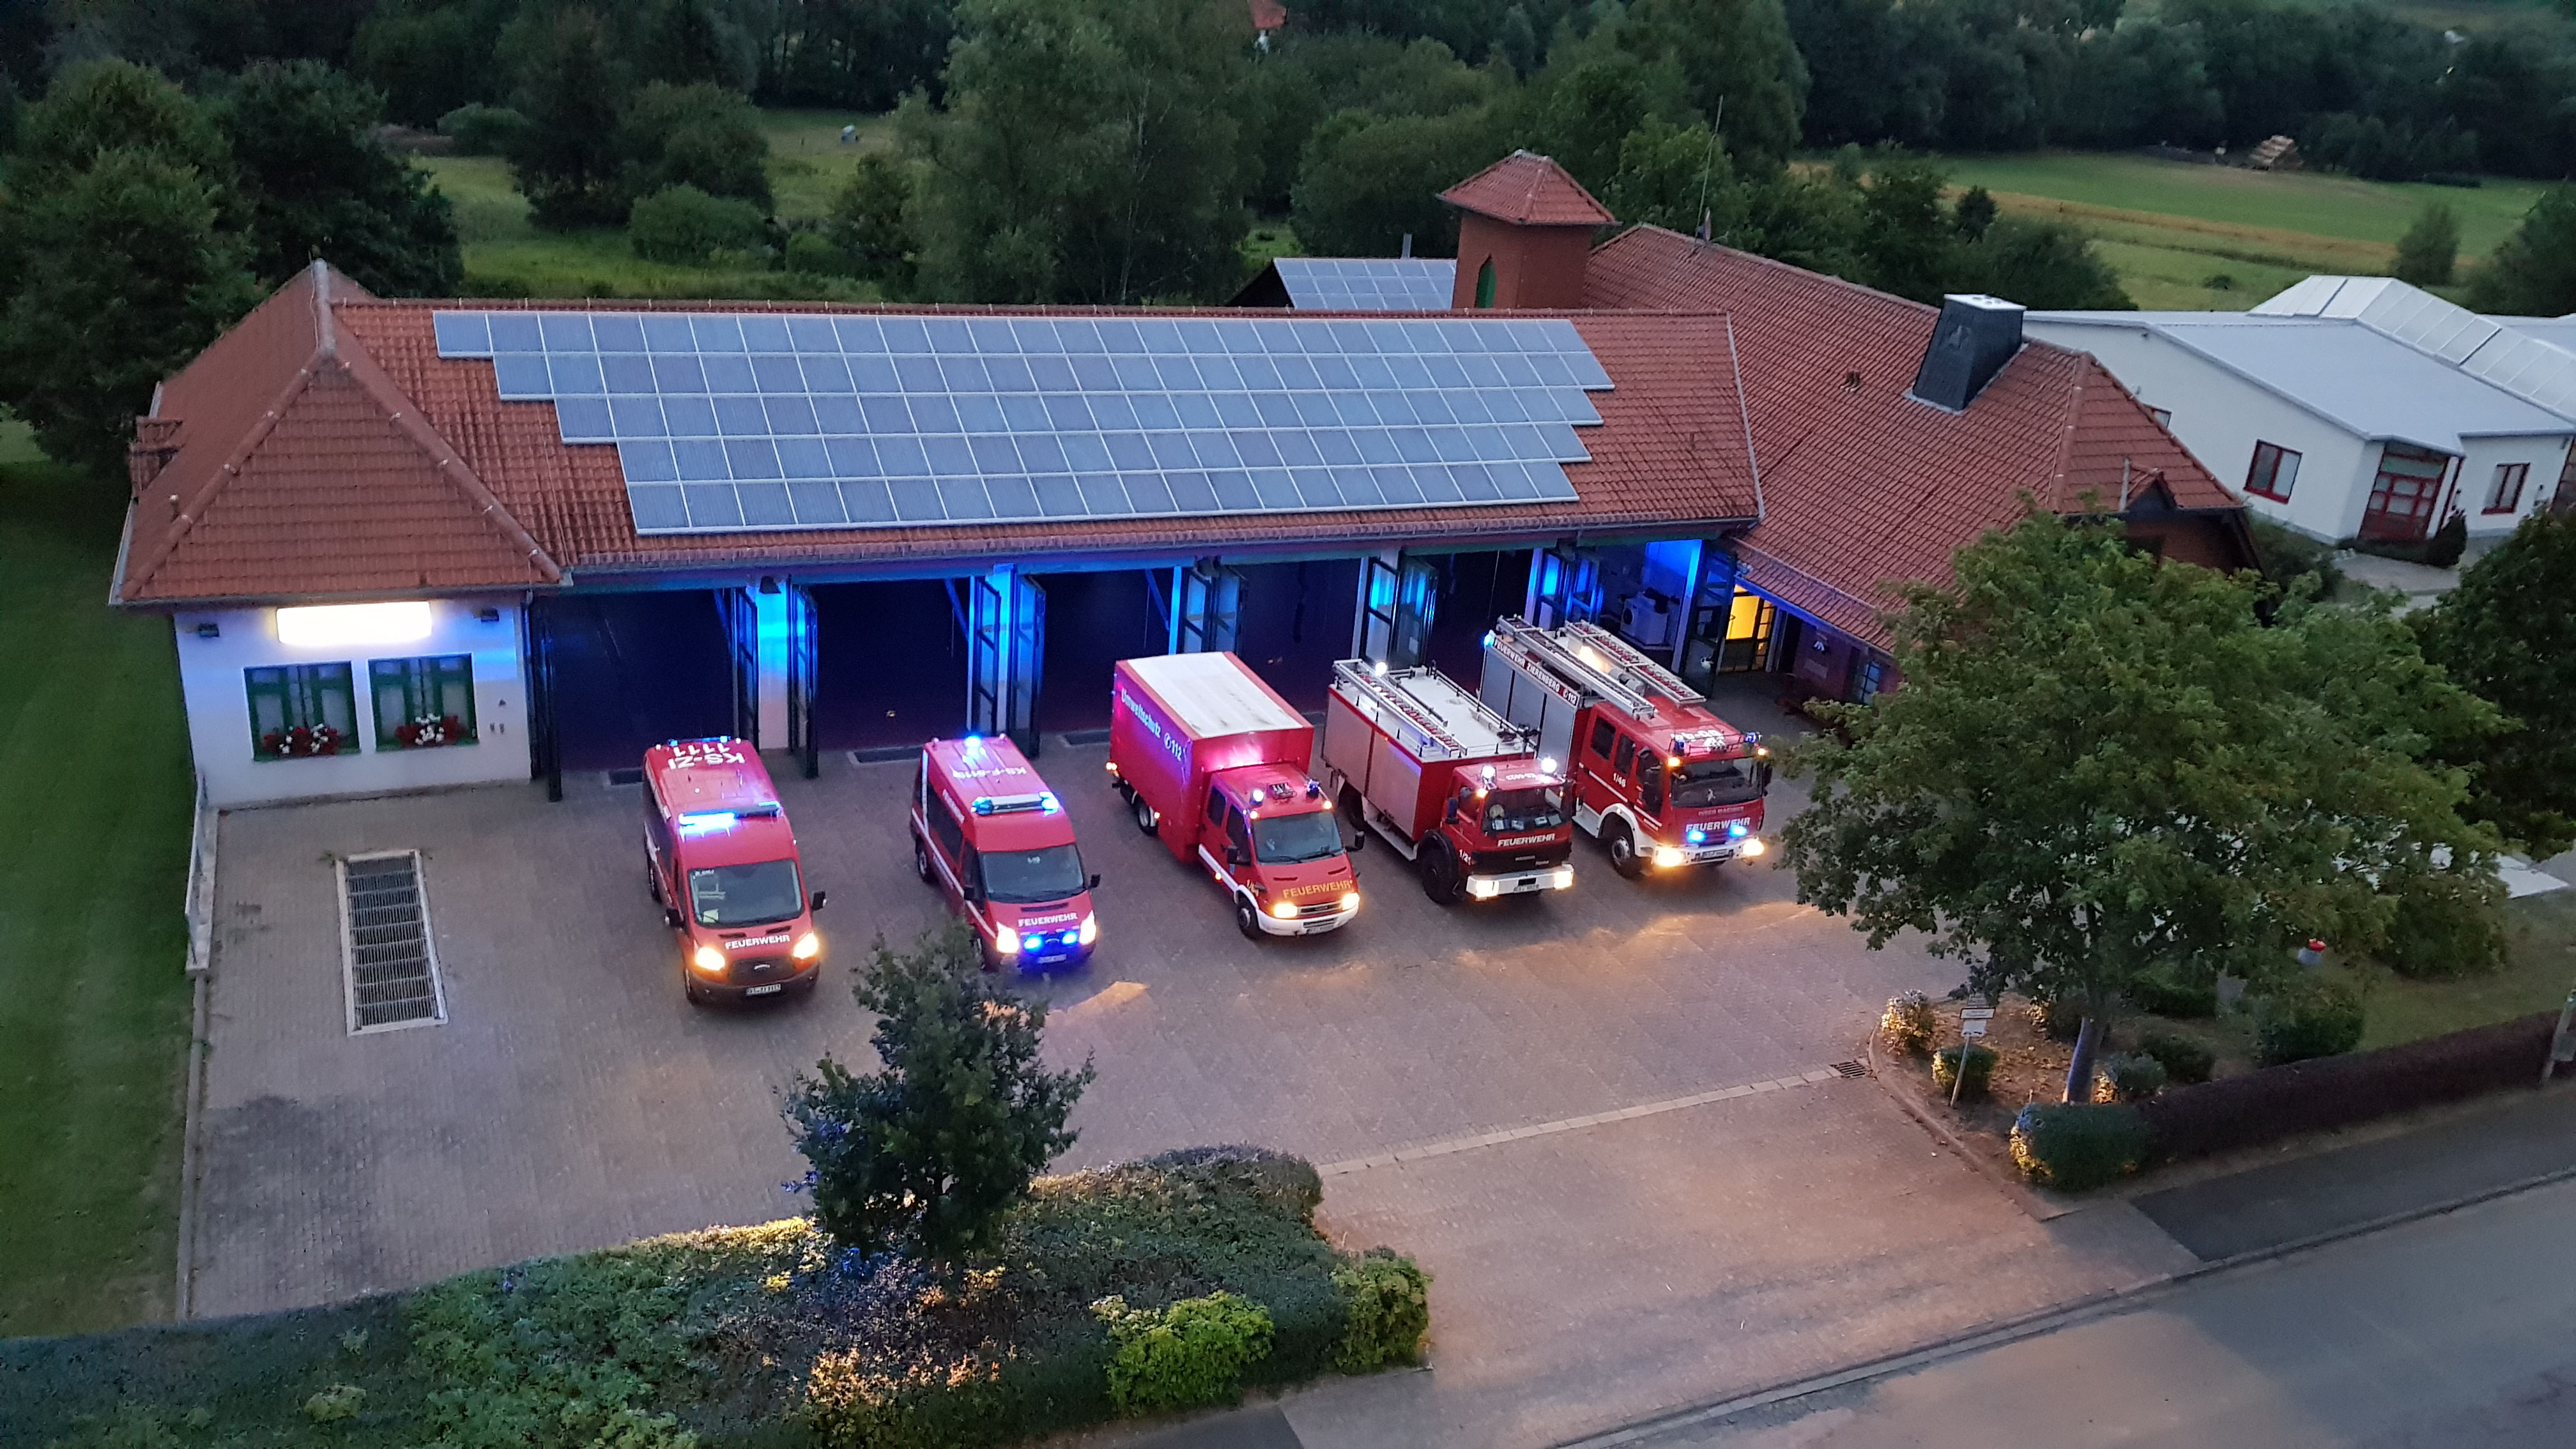 (c) Feuerwehr-zierenberg.de